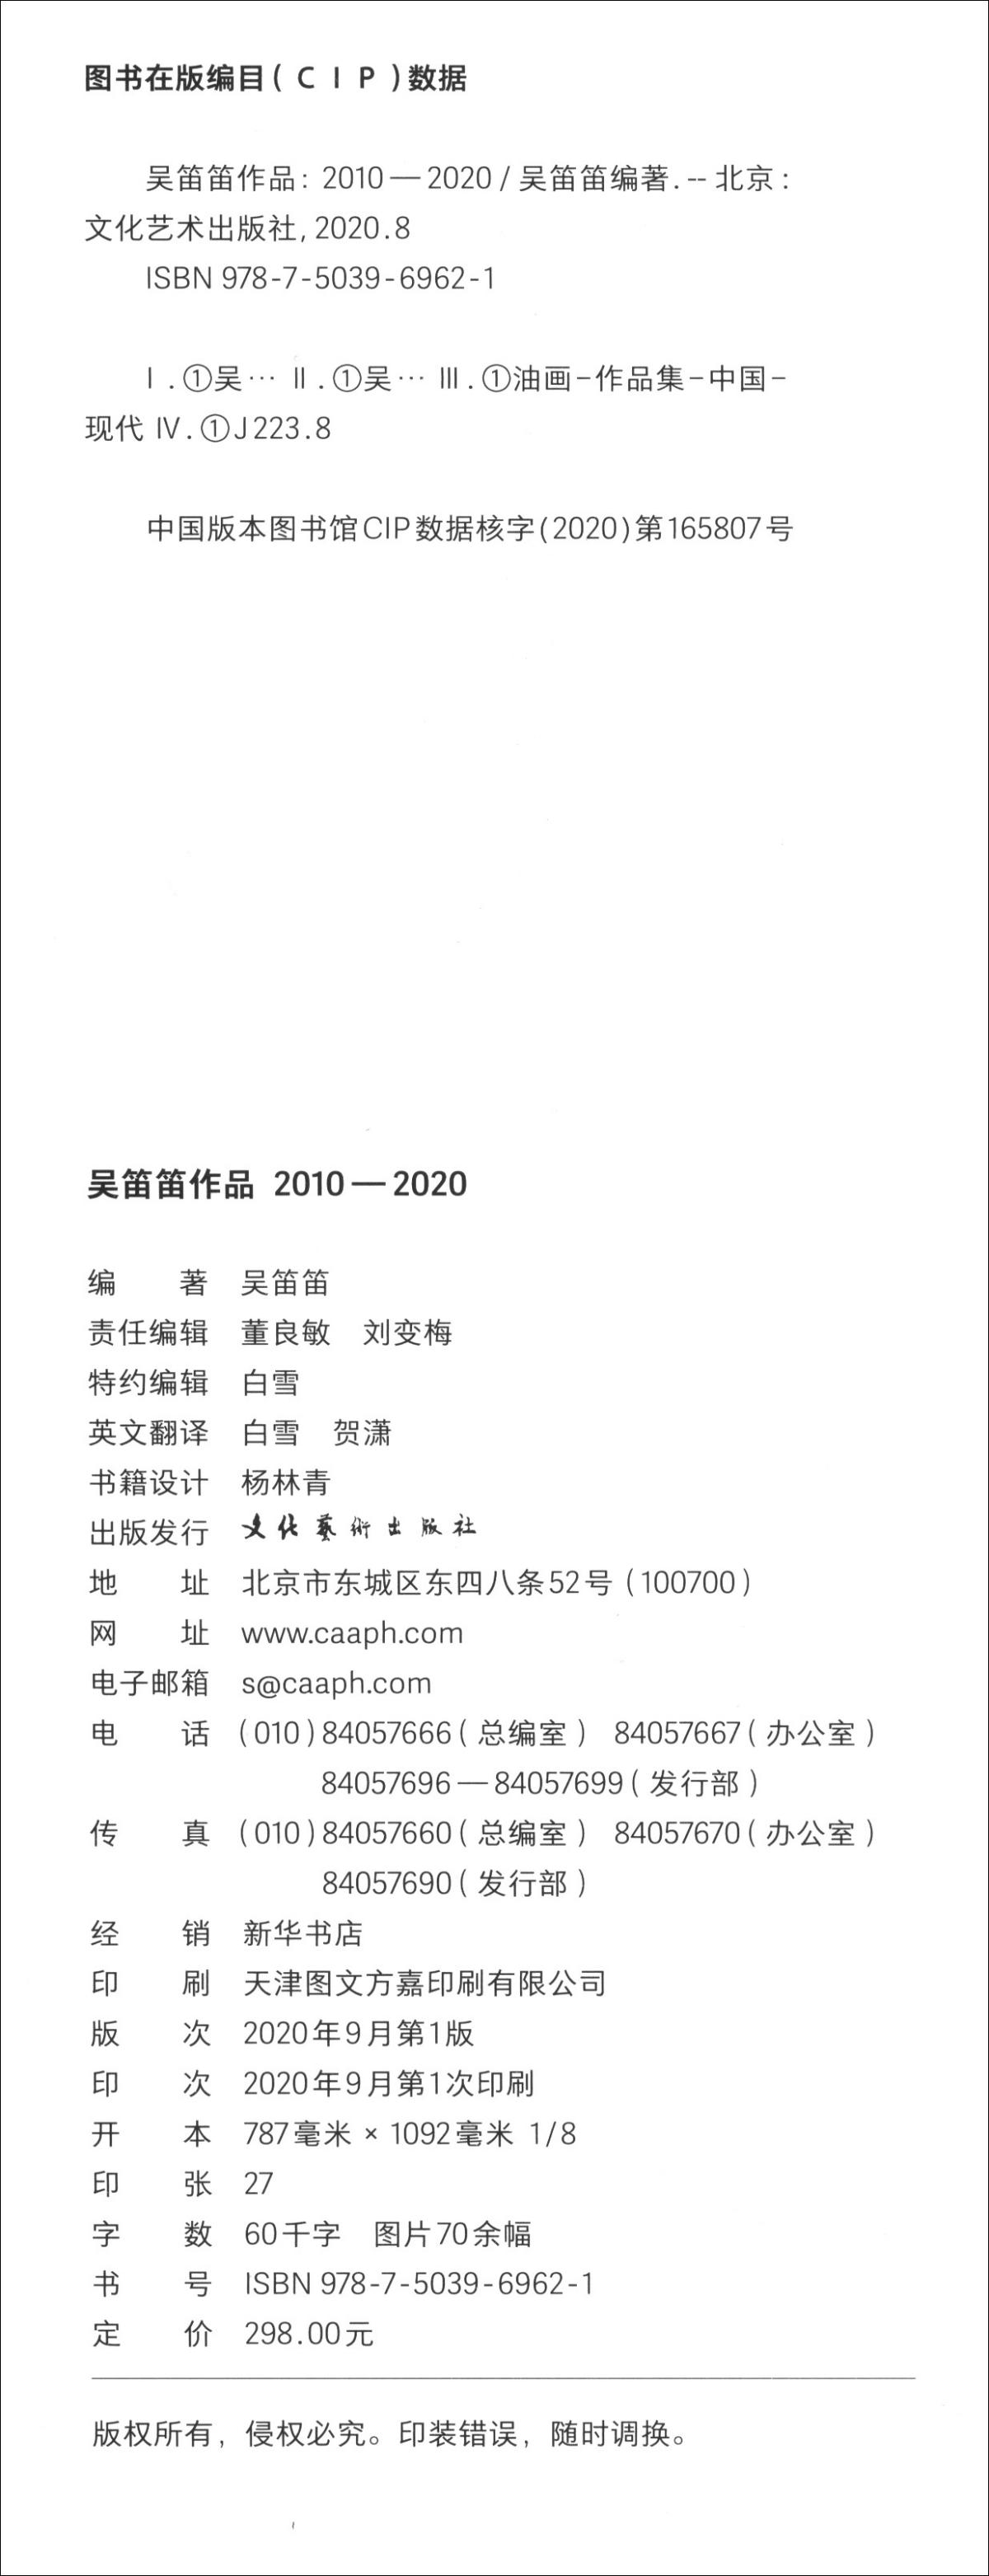 吴笛笛作品 2010—2020